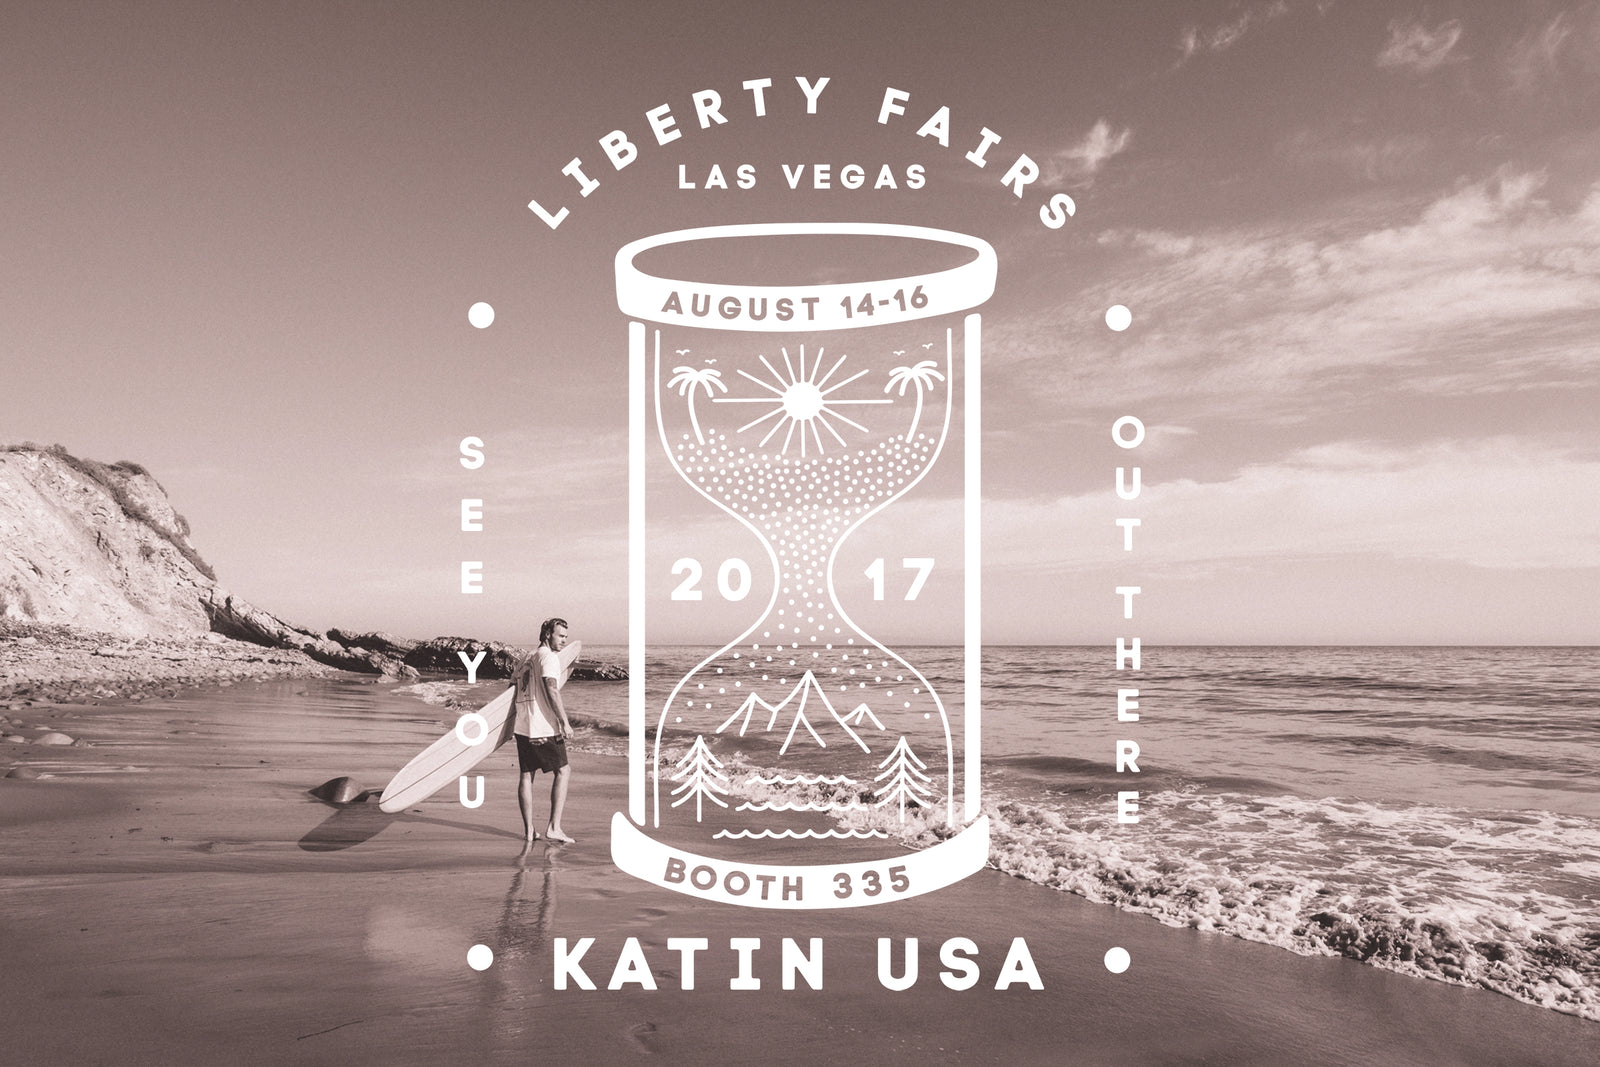 Katin Spring/Summer '18 at Liberty Fairs Vegas